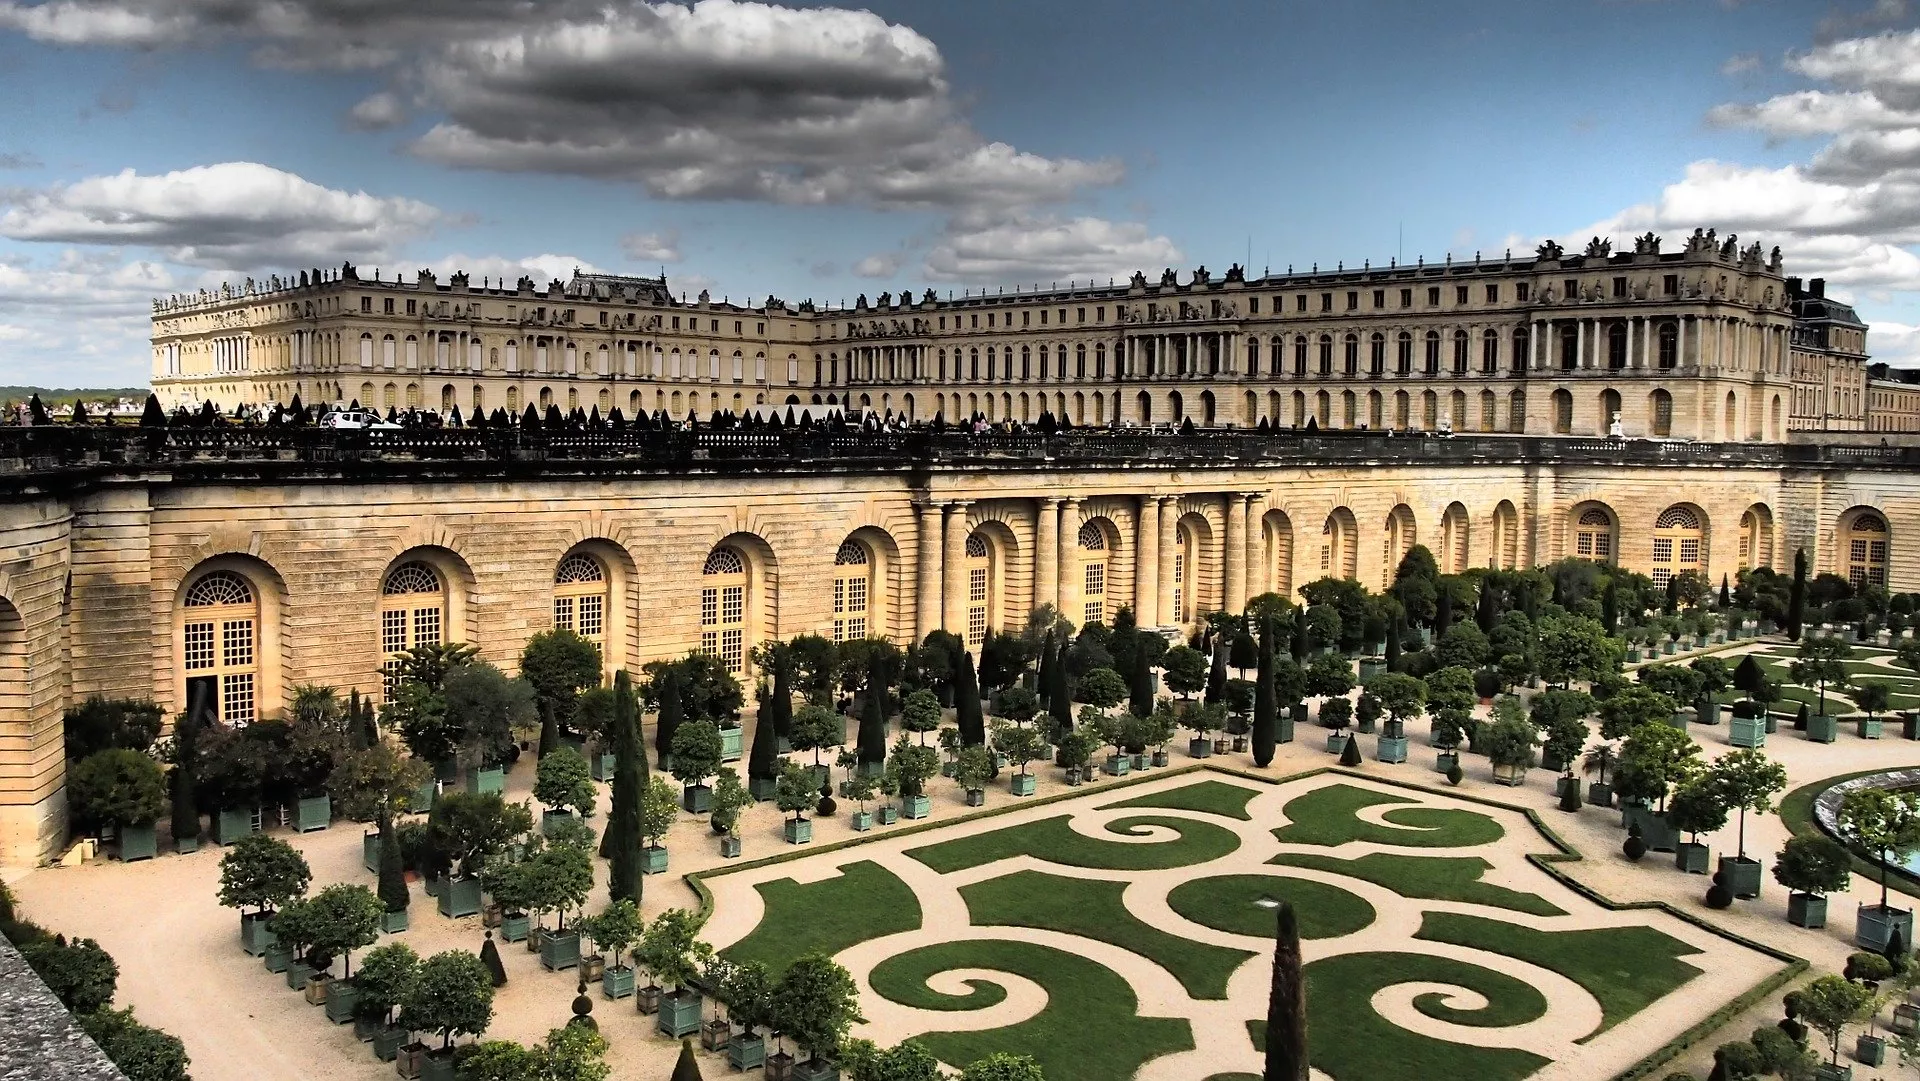 Main image of article: Pourquoi visiter Versailles et assister aux Grandes Eaux ?